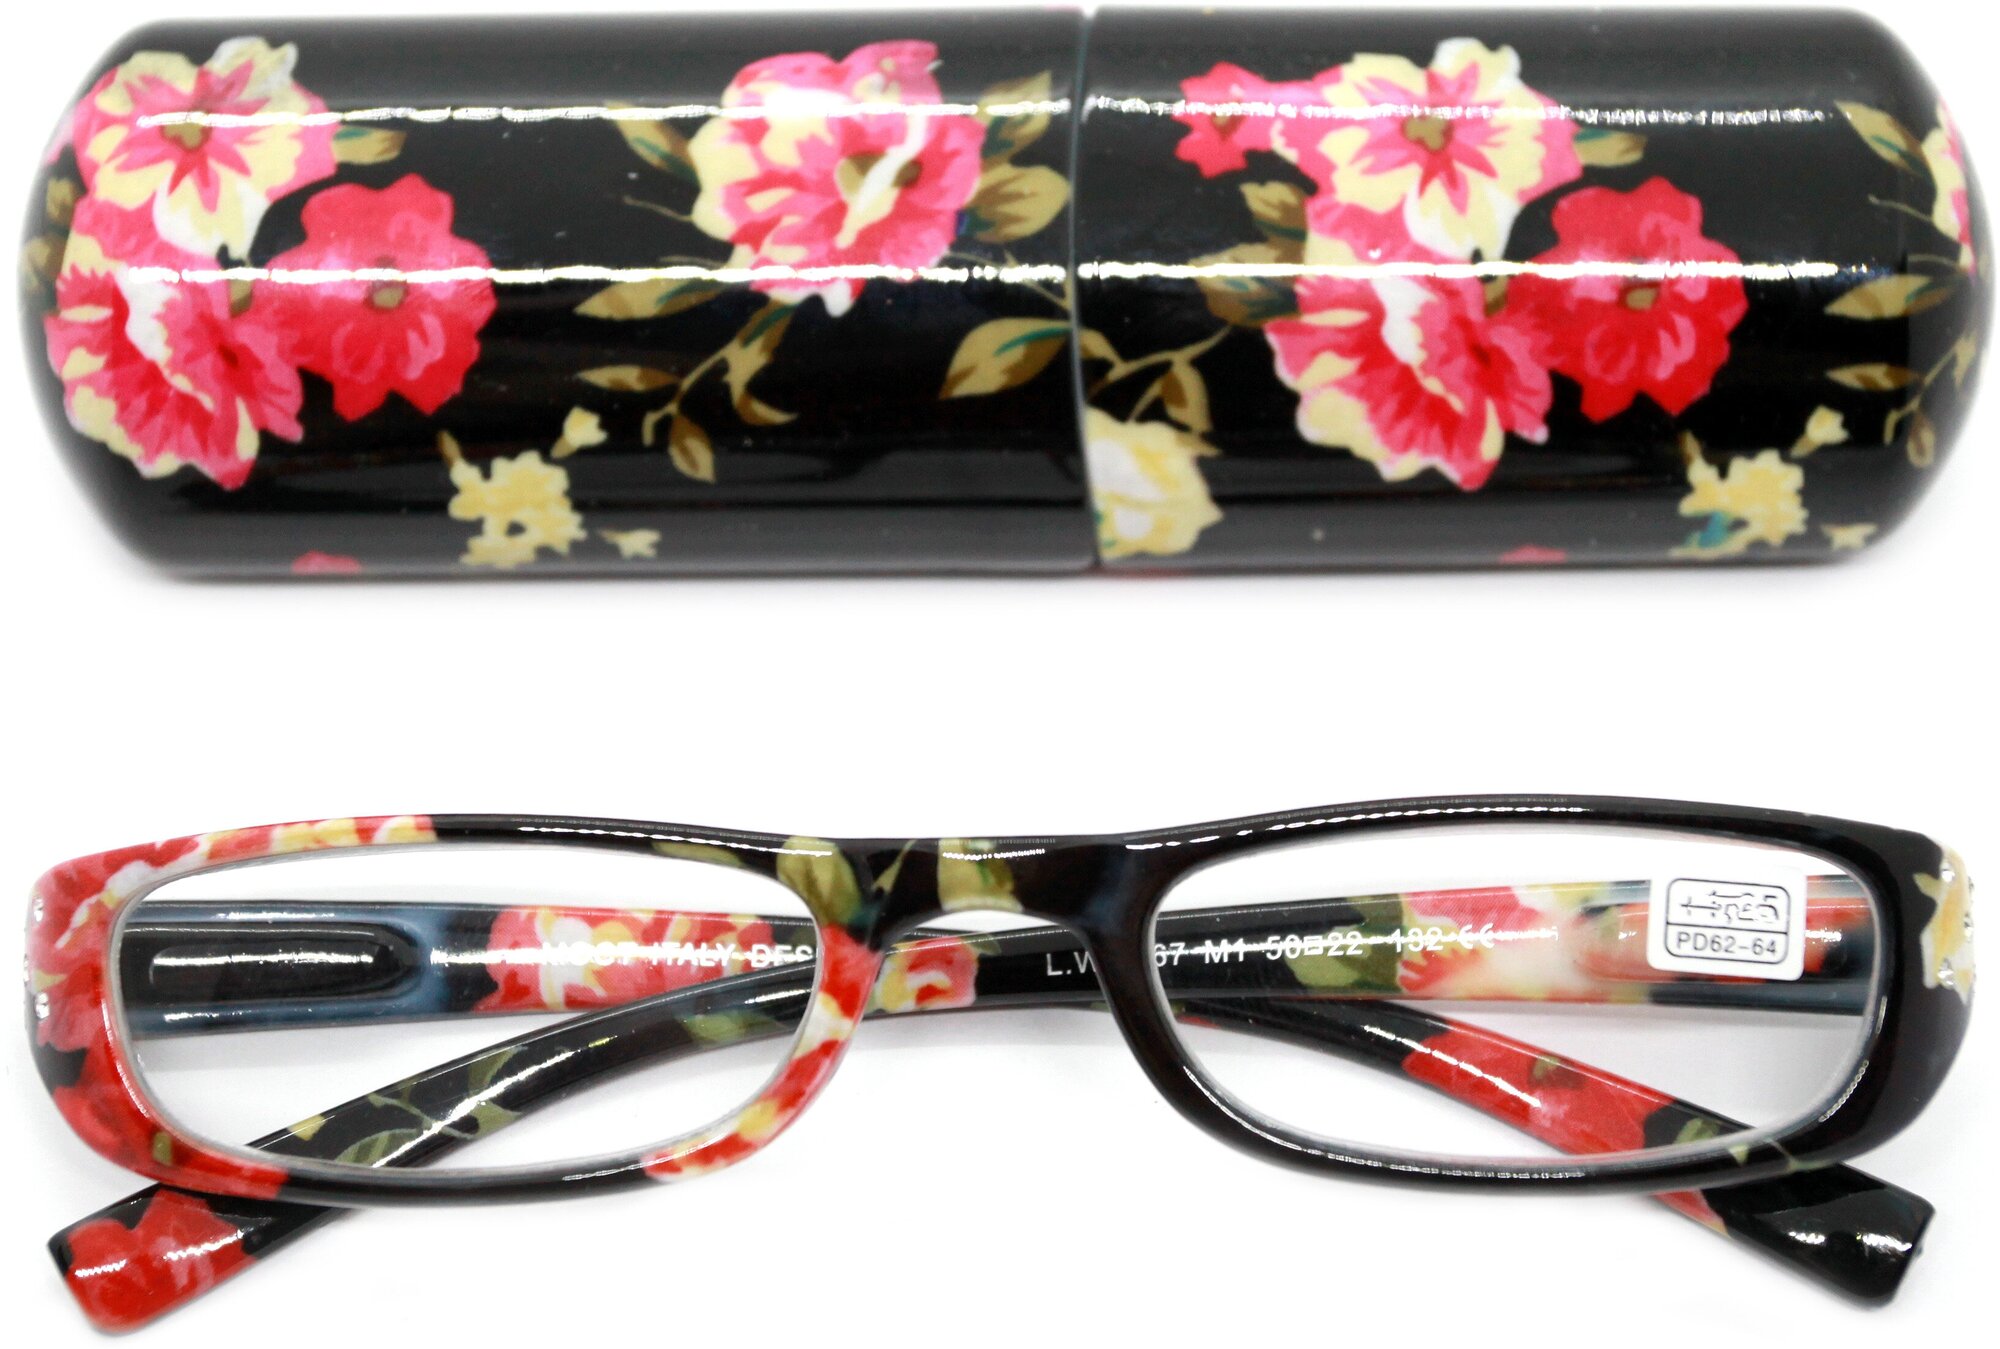 Узкие очки для чтения женские с футляром (+2.25) коррегирующие, L.W. 2067 M1, цвет черно-красный, РЦ 62-64